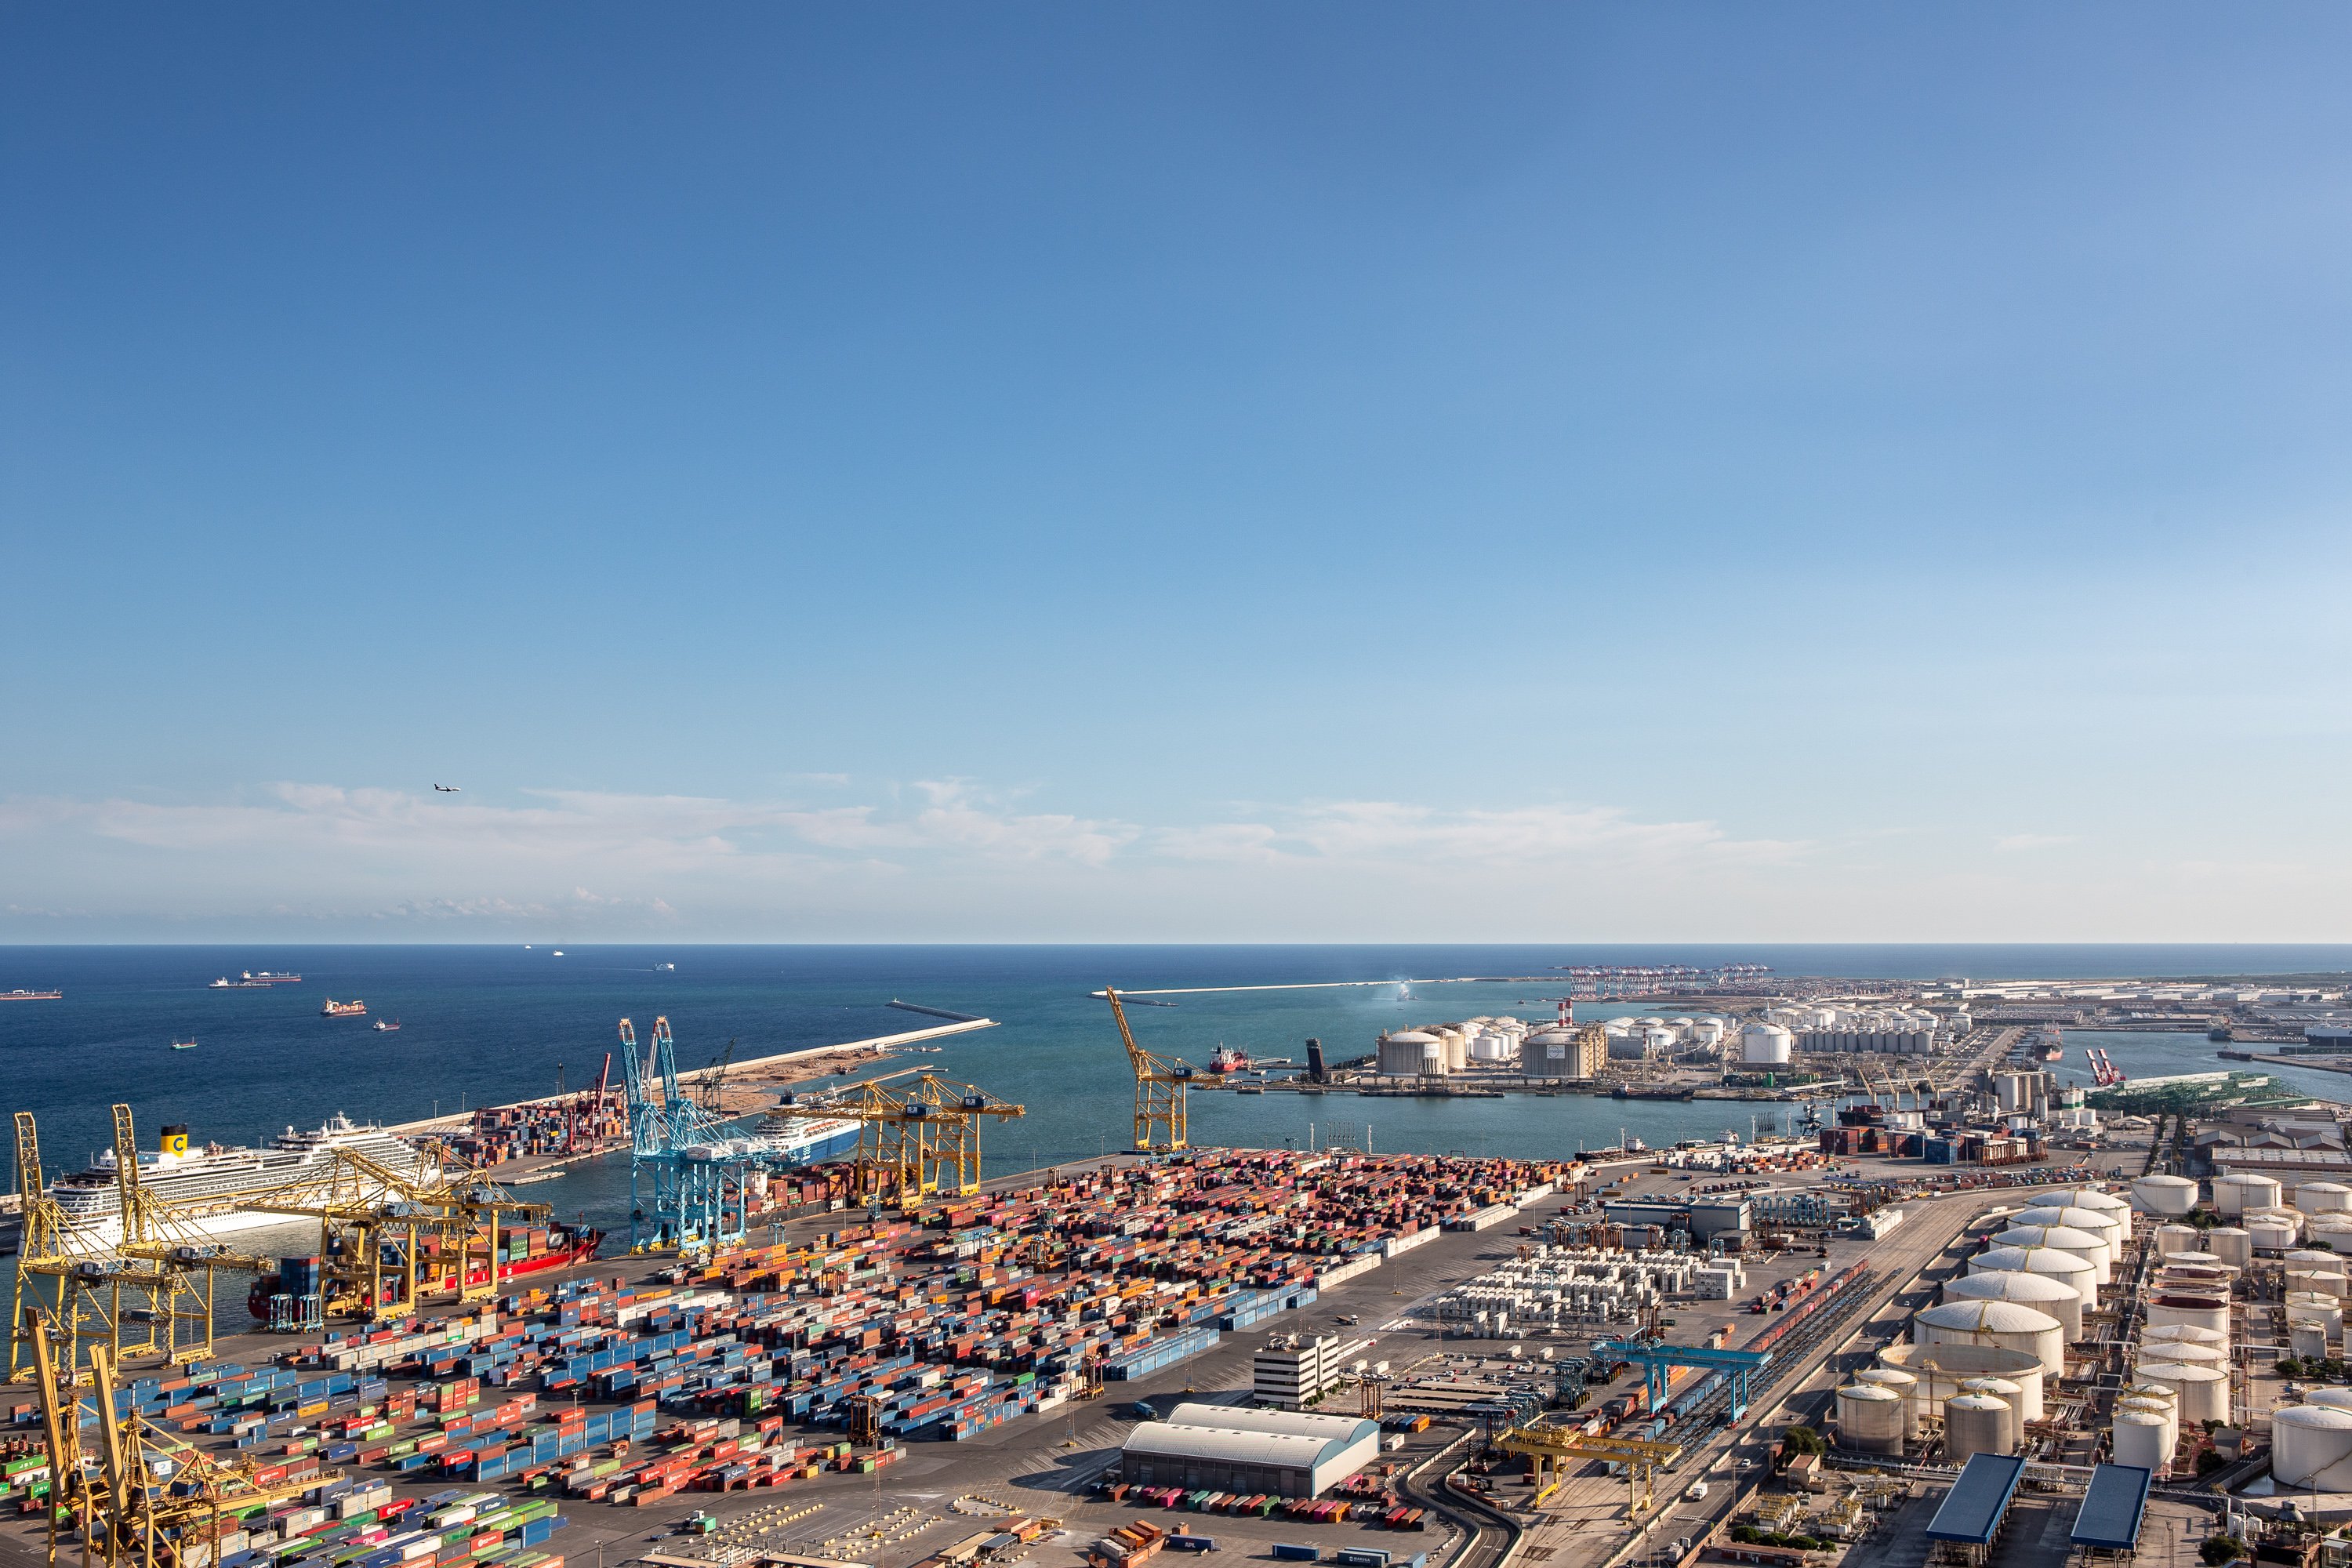 El tràfic de mercaderies al port de Barcelona creix un 1,3% fins a l'octubre